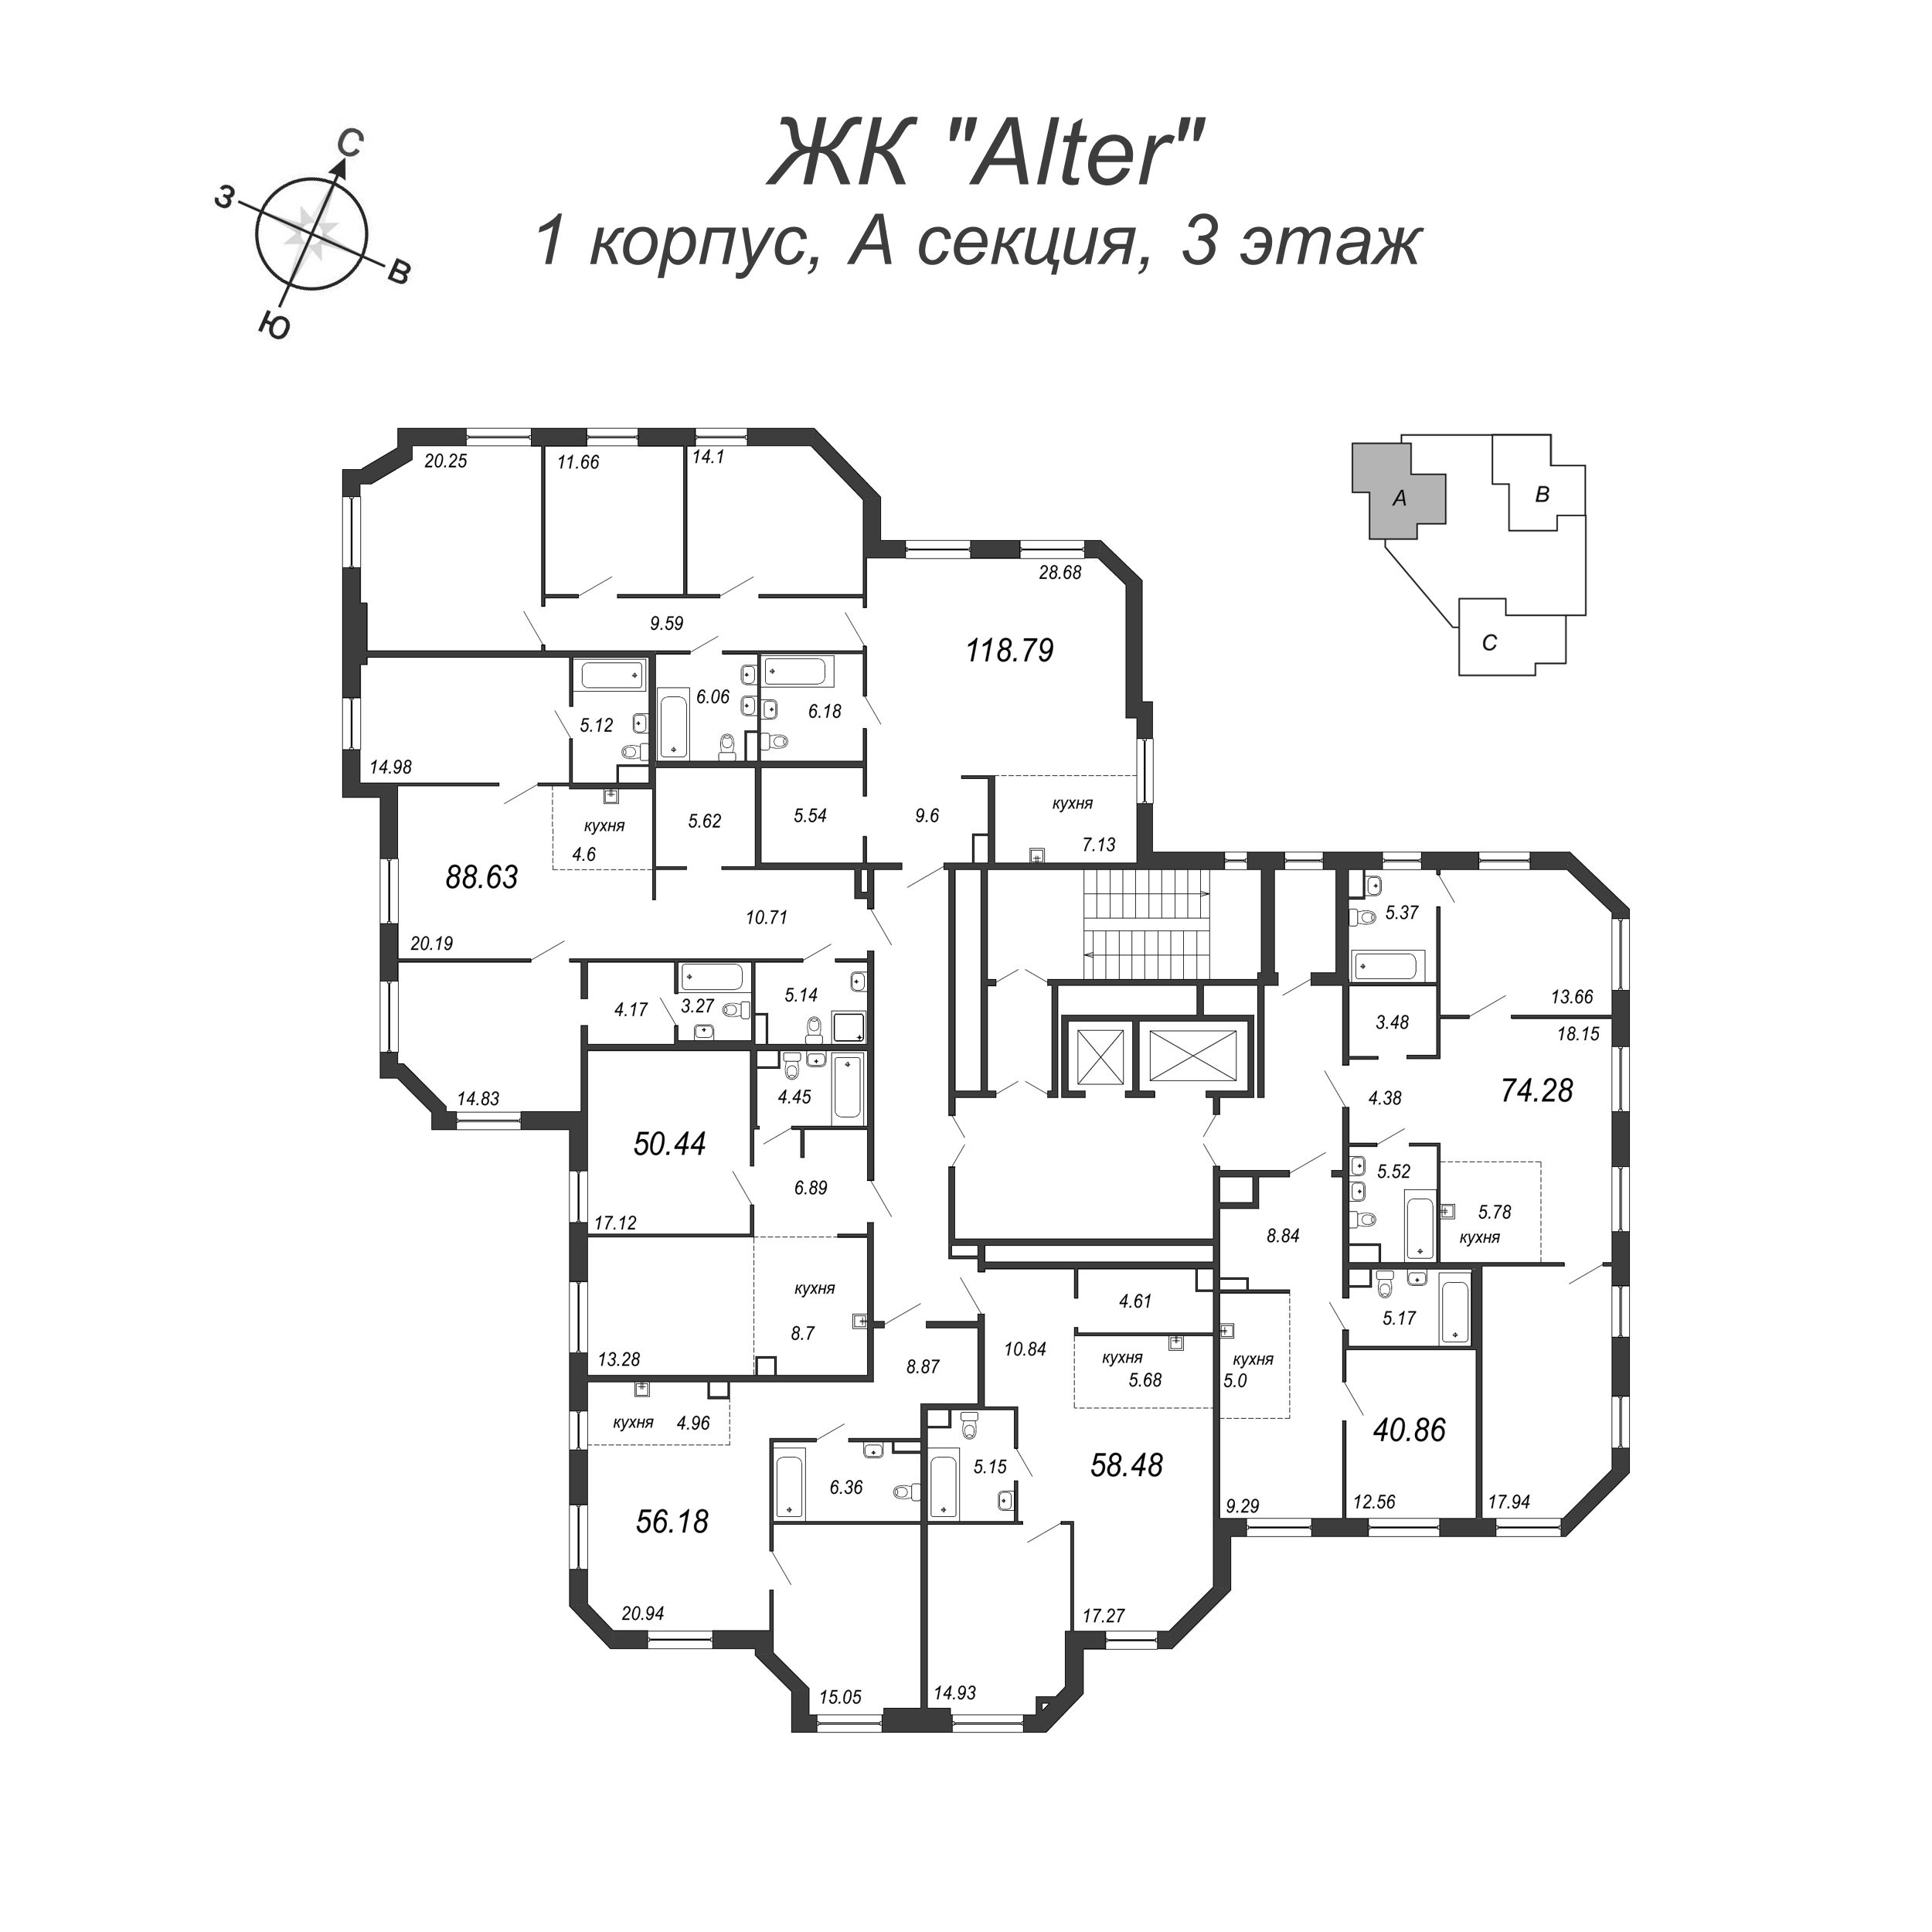 2-комнатная (Евро) квартира, 56.9 м² в ЖК "Alter" - планировка этажа